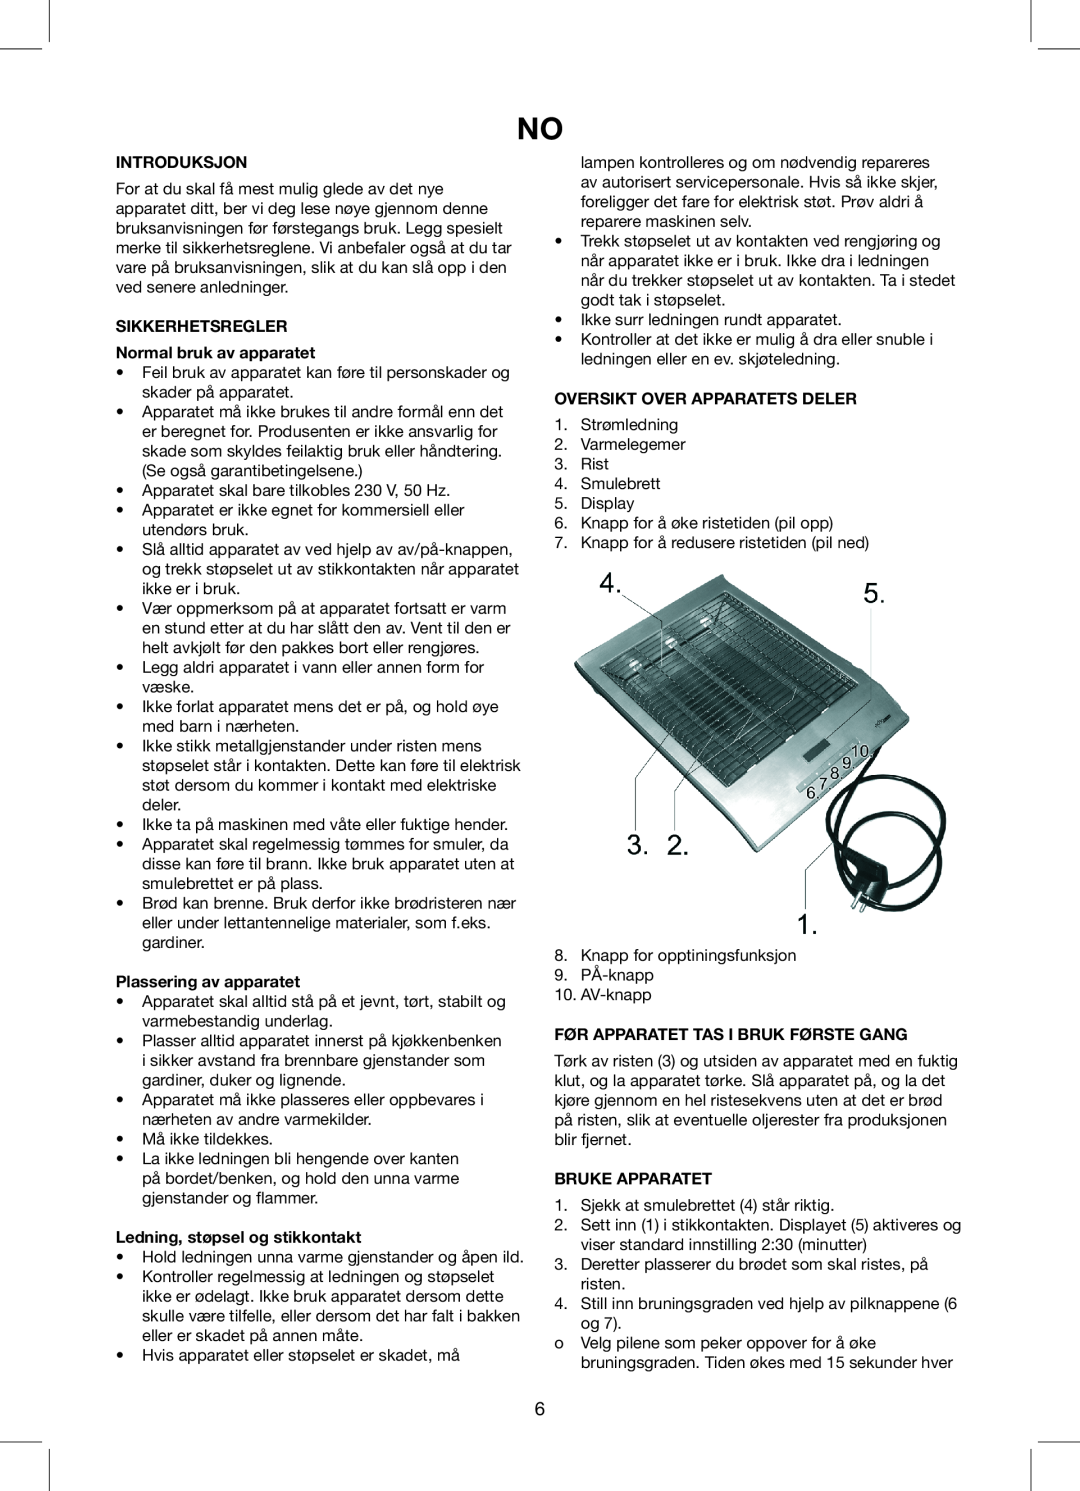 Melissa 243-046 manual Introduksjon, SIKKERHETSREGLER Normal bruk av apparatet, Plassering av apparatet, Bruke Apparatet 